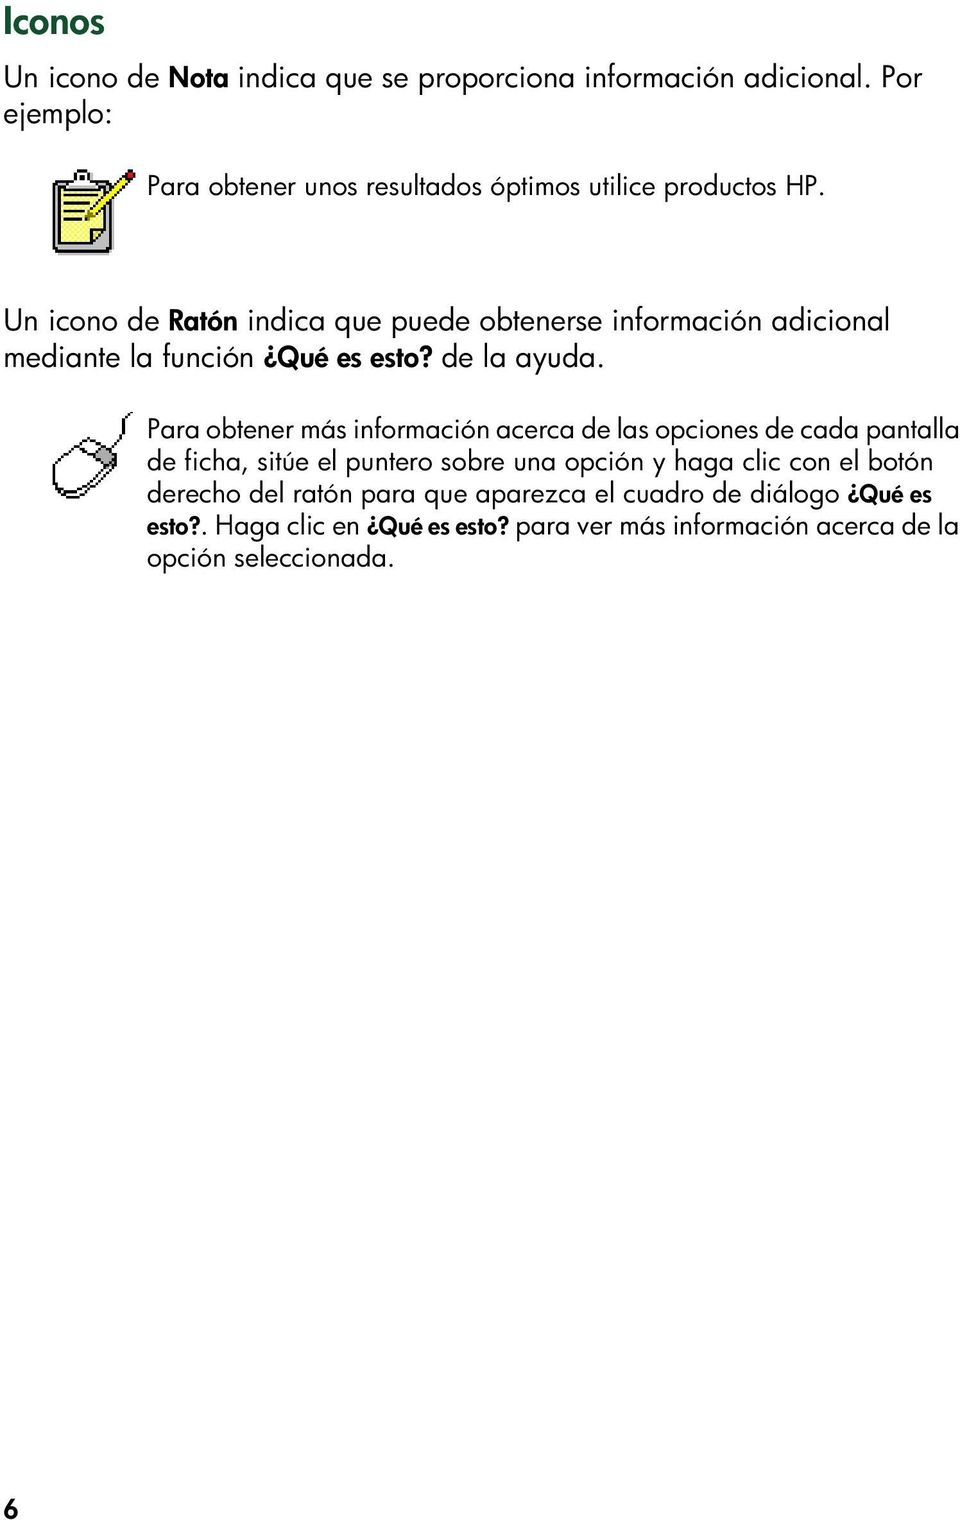 Un icono de Ratón indica que puede obtenerse información adicional mediante la función Qué es esto? de la ayuda.